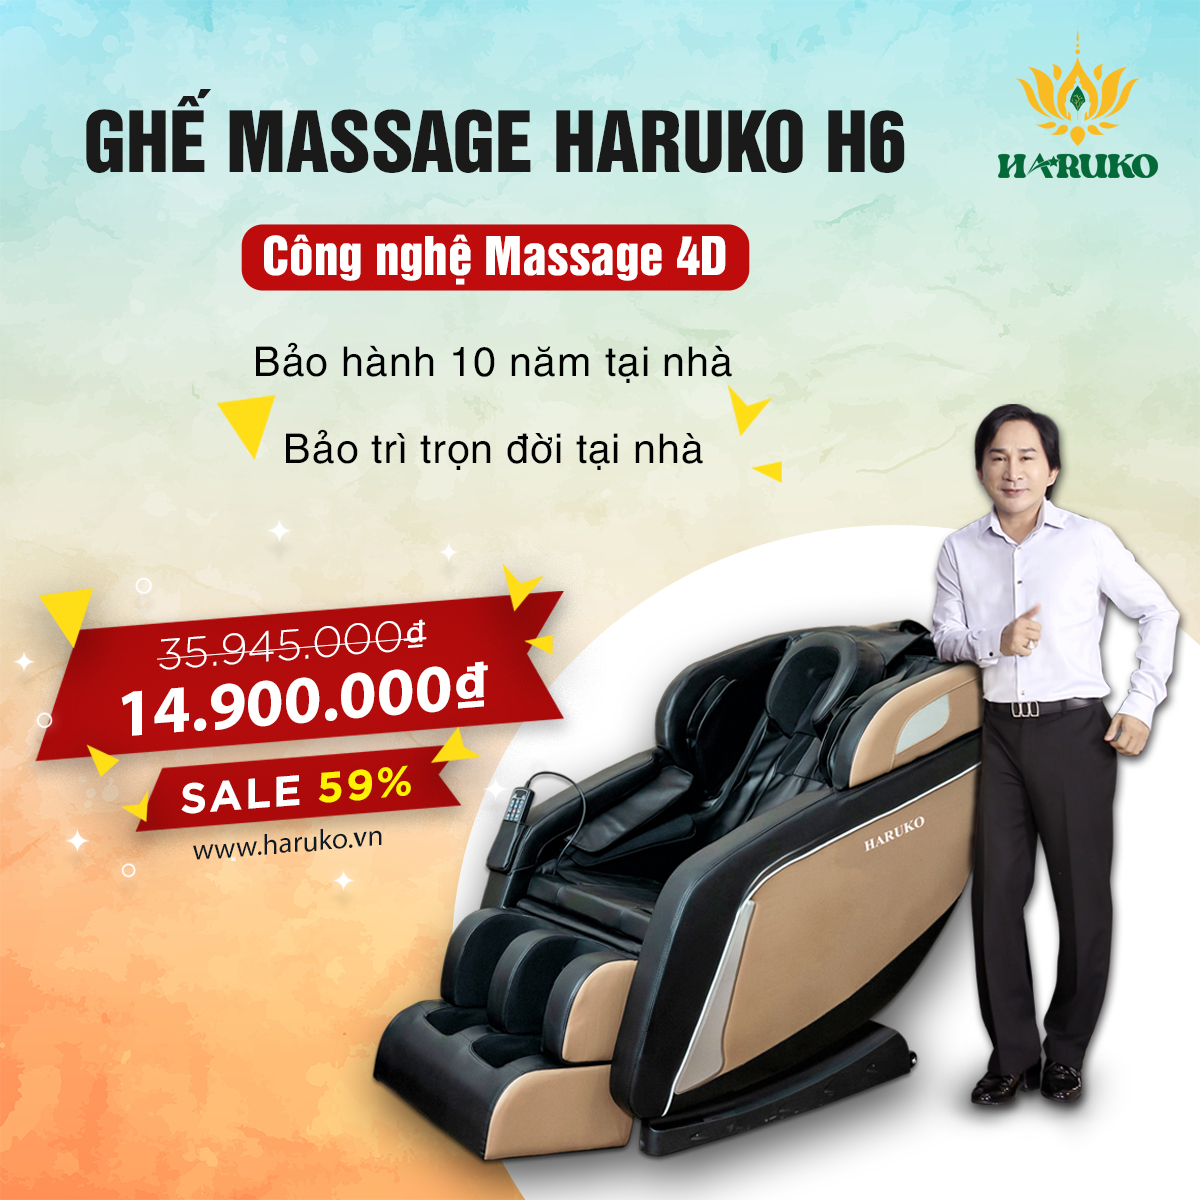 Người sử dụng nên tìm mua ghế massage tại những thương hiệu uy tín,sở hữu dịch vụ hậu mãi và bảo hành chất lượng